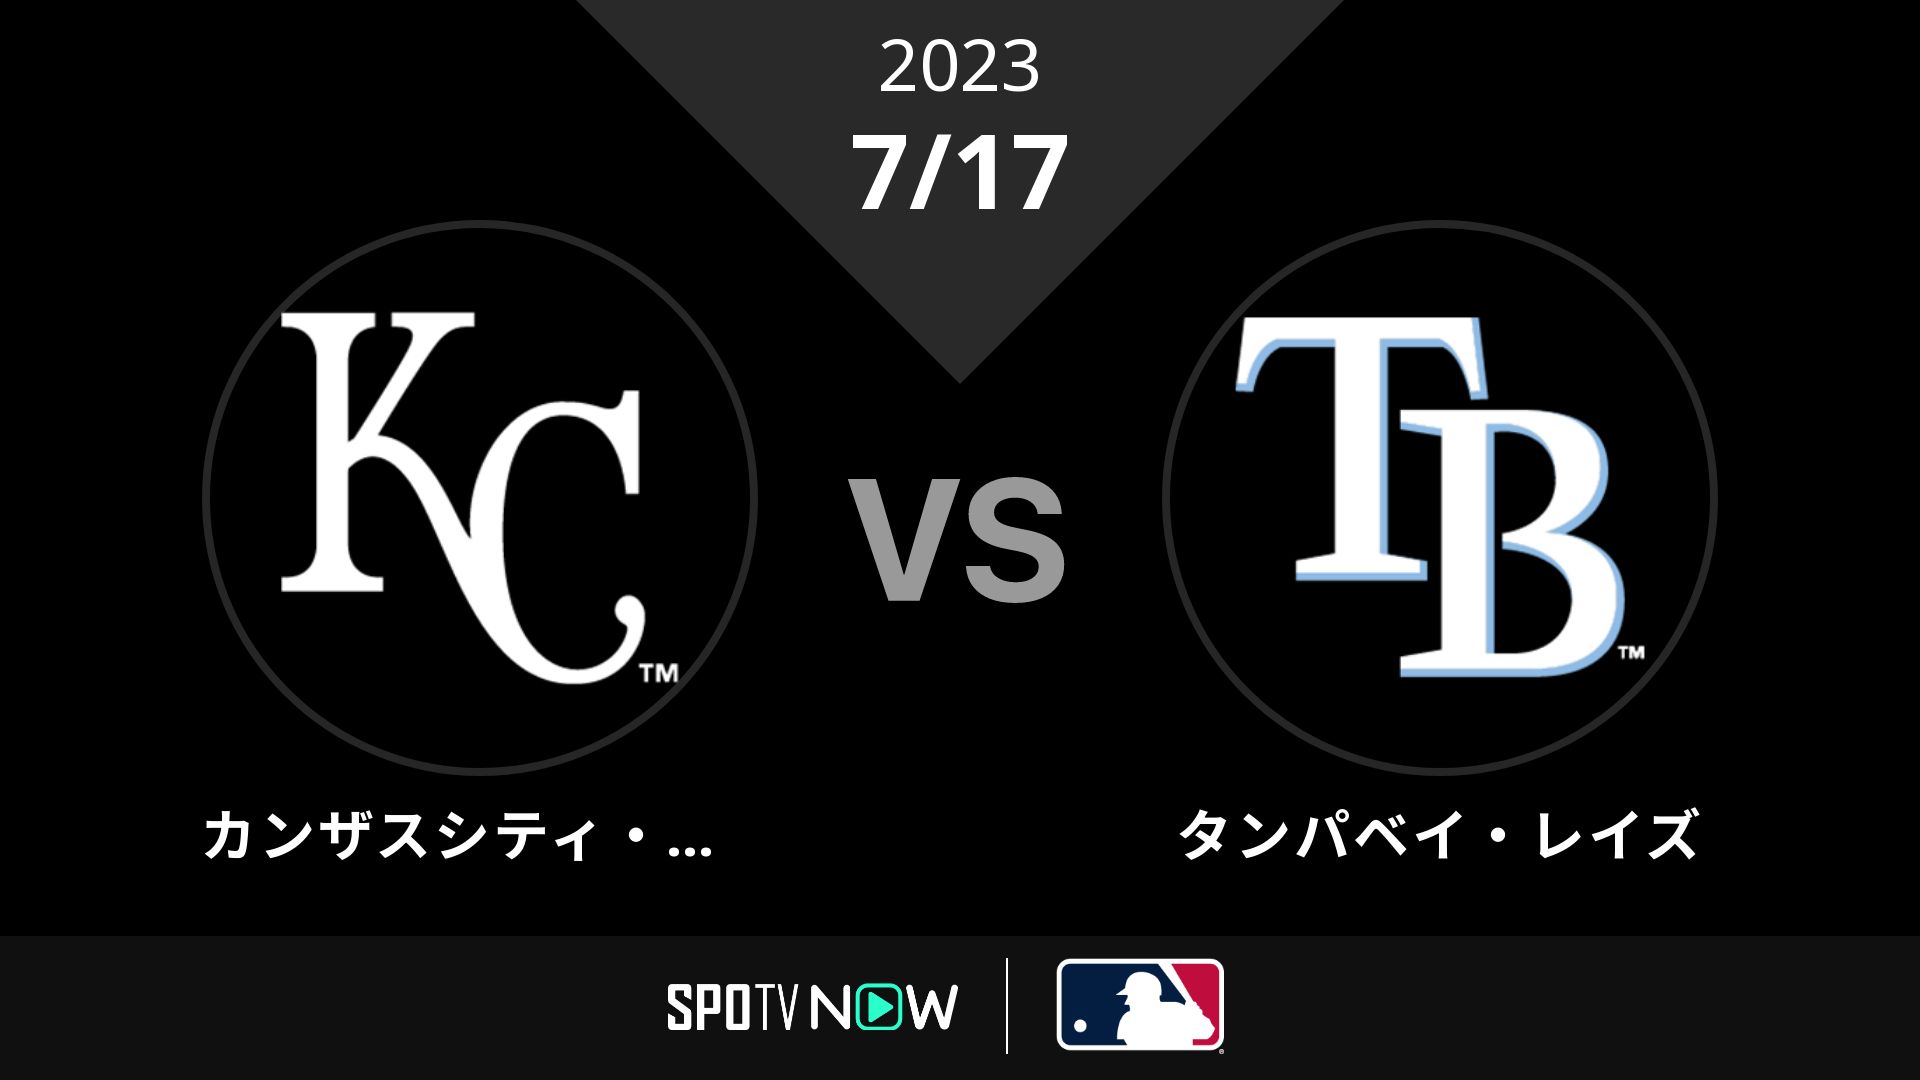 2023/7/17 ロイヤルズ vs レイズ [MLB]